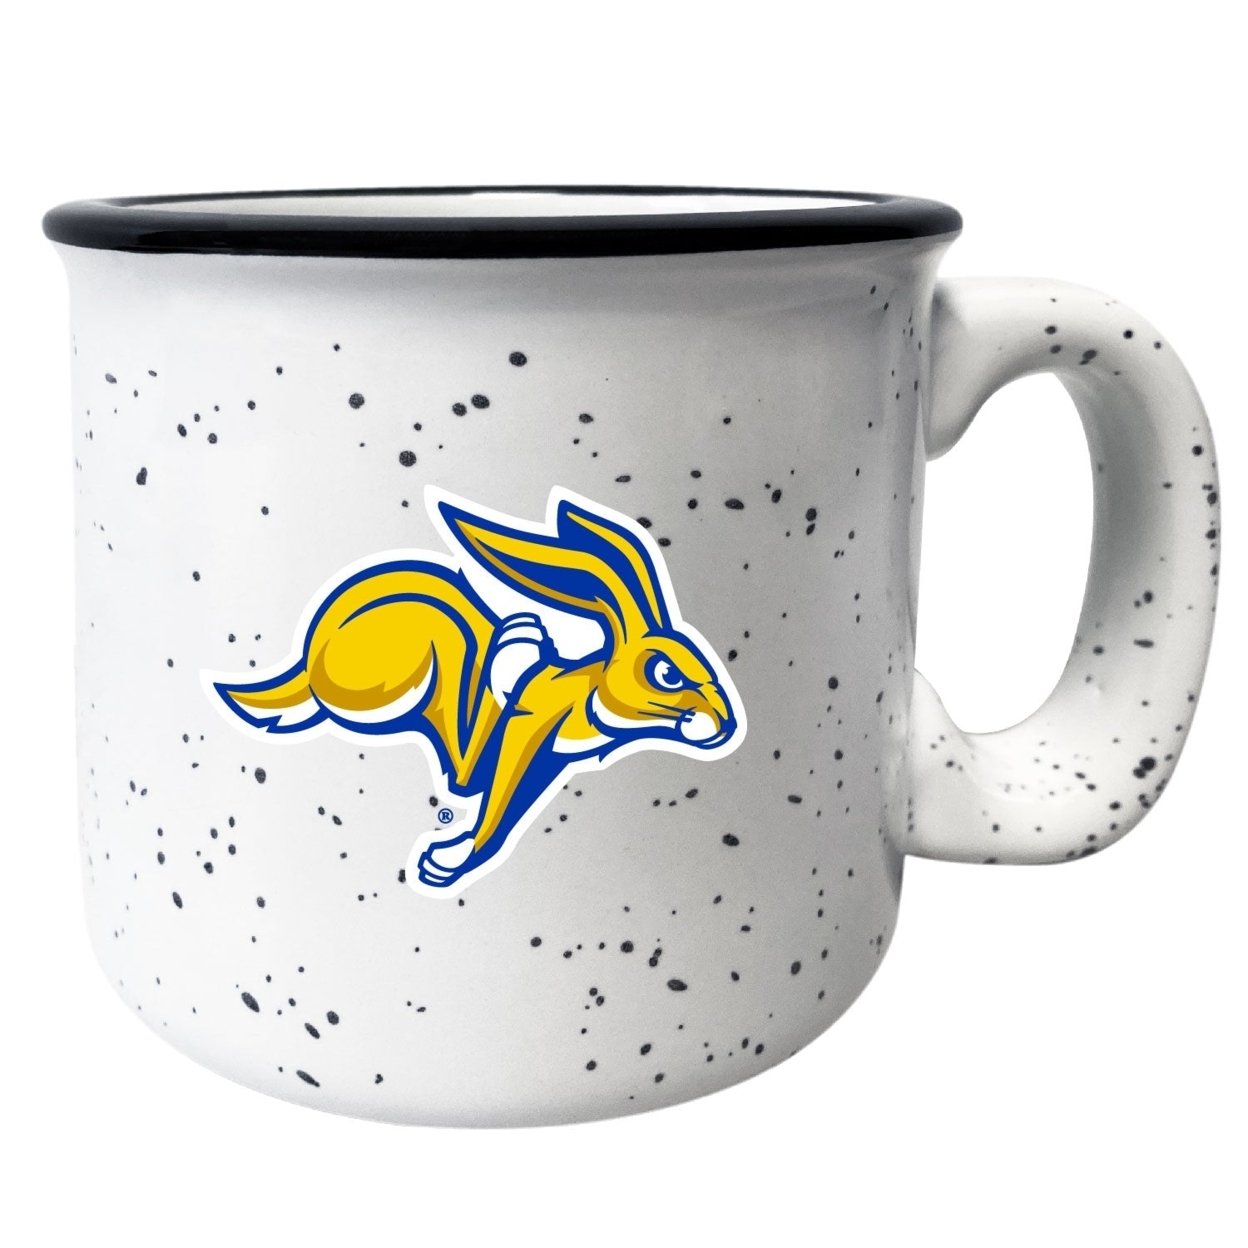 South Dakota Jackrabbits Speckled Ceramic Camper Coffee Mug - Choose Your Color - Gray